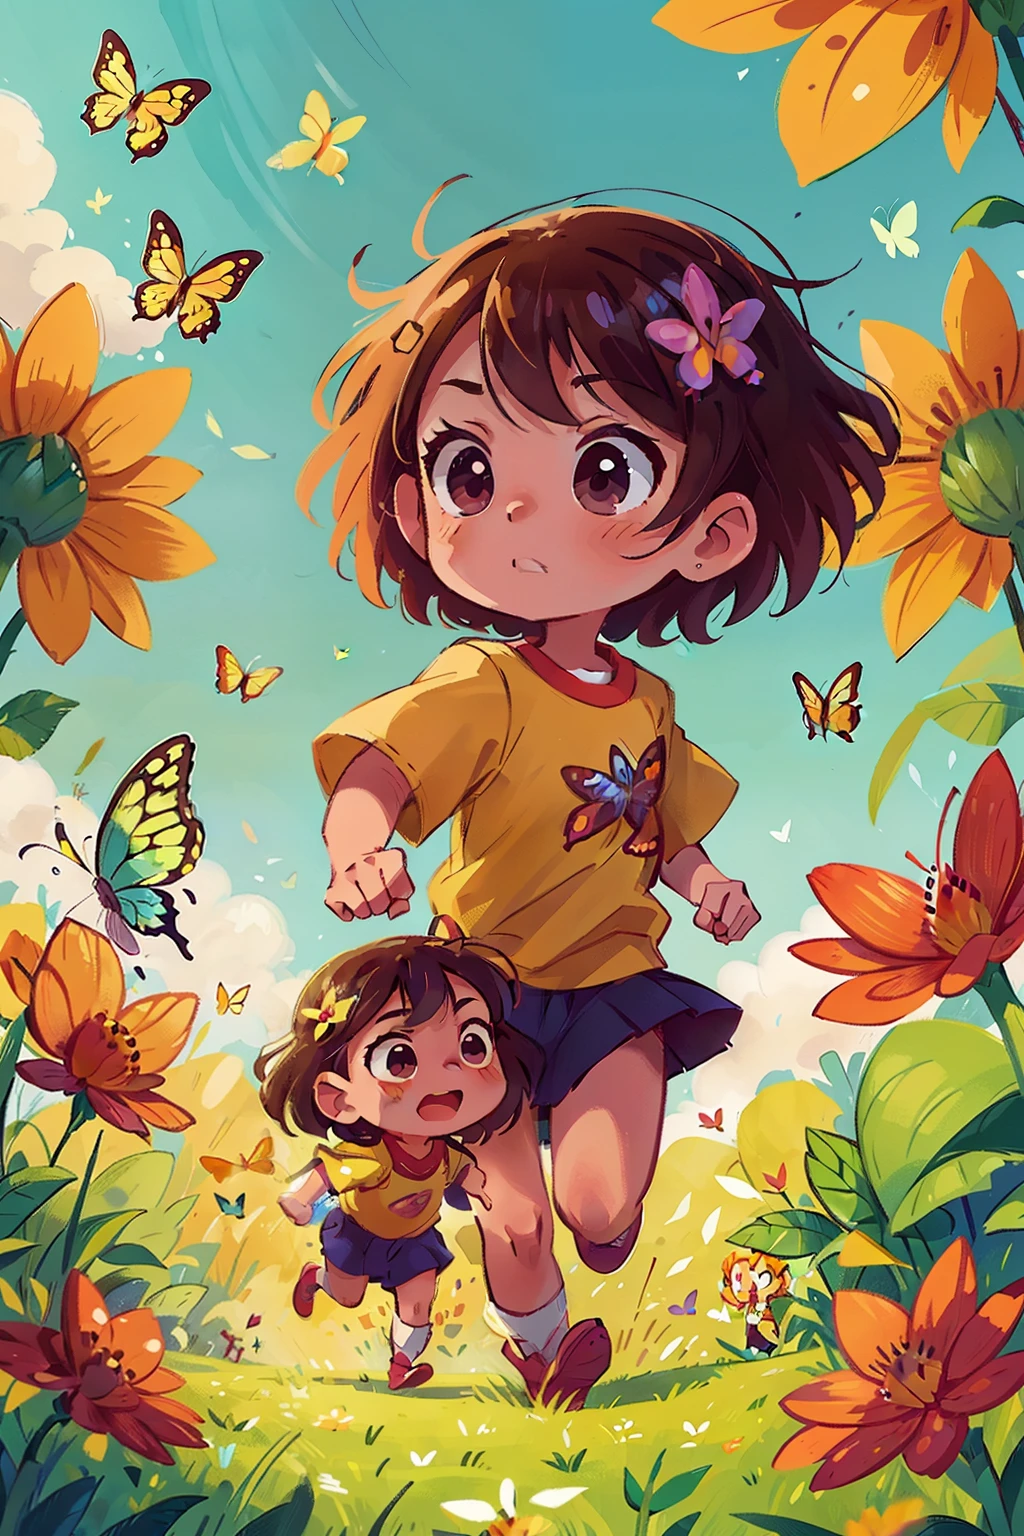 Gera uma imagem de duas meninas muito jovens correndo felizes em um campo florido, cercado por borboletas de vários tons de cor